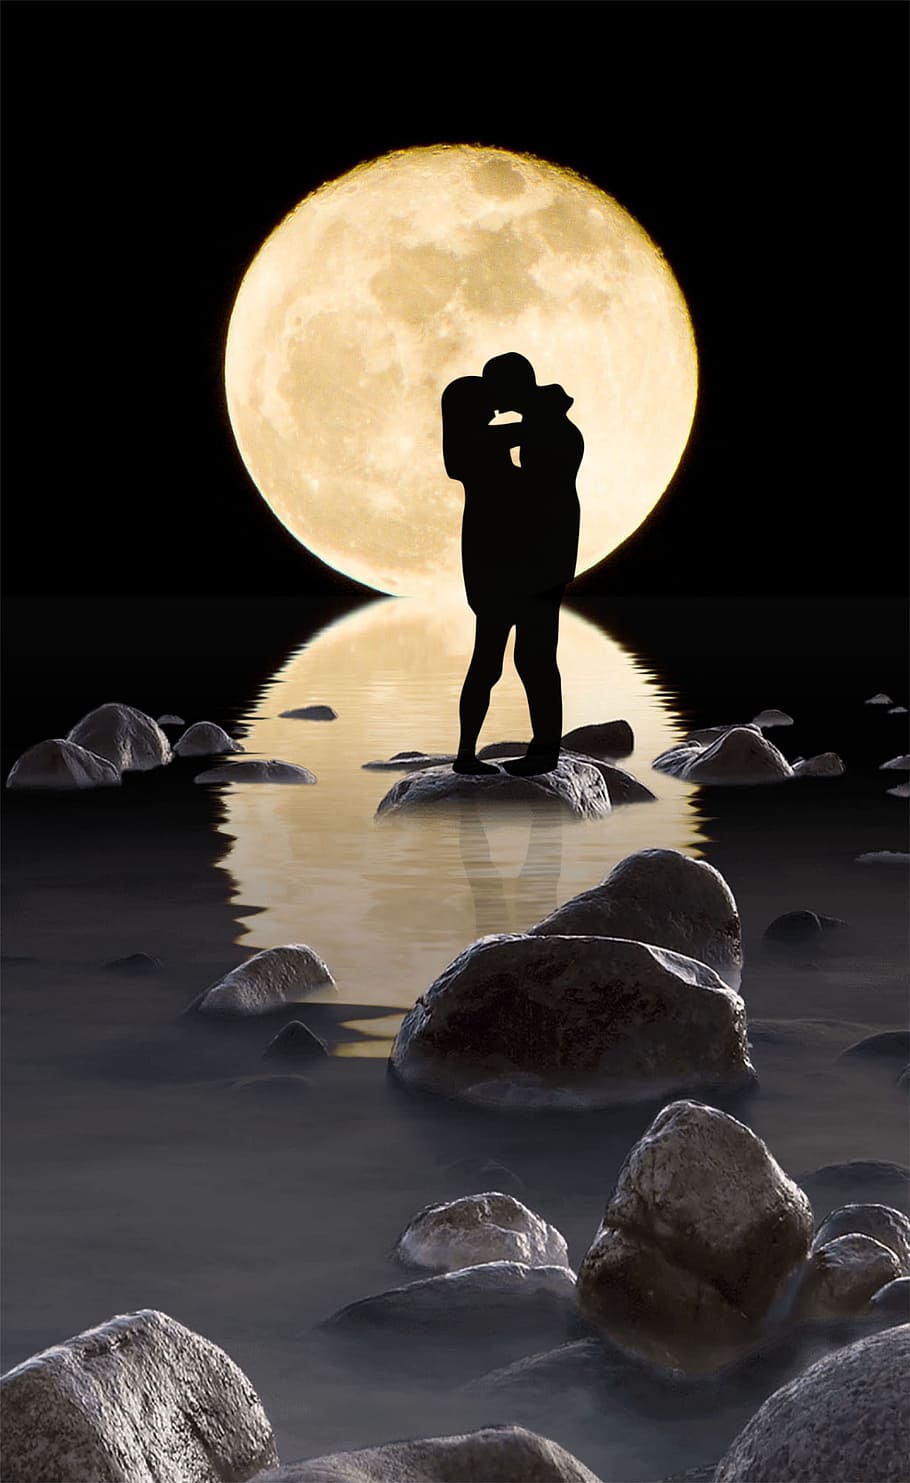 シルエット写真, 男, 女, 月, カップル, キス, 反射, ロマンチック, 水, 背景